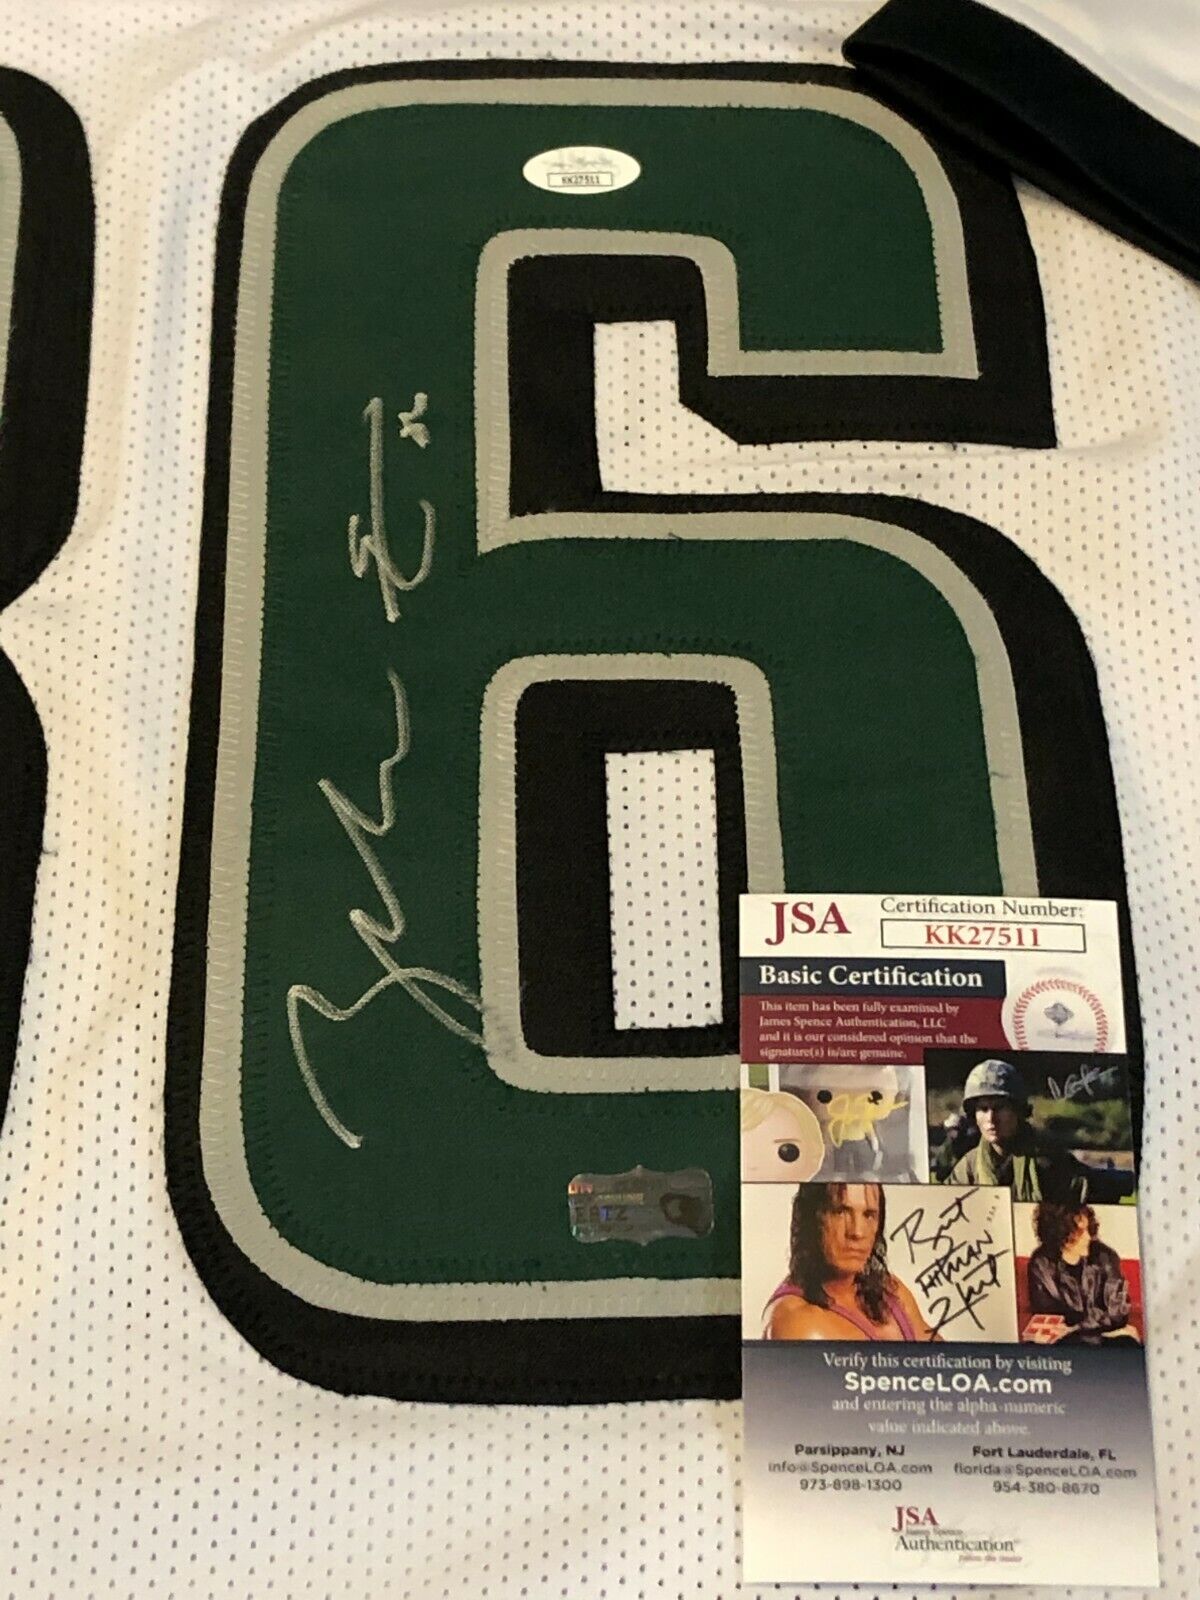 MVP Authentics Philadelphia Eagles Zach Ertz Autographed Signed Jersey Jsa  Coa 179.10 sports jersey framing , jersey framing